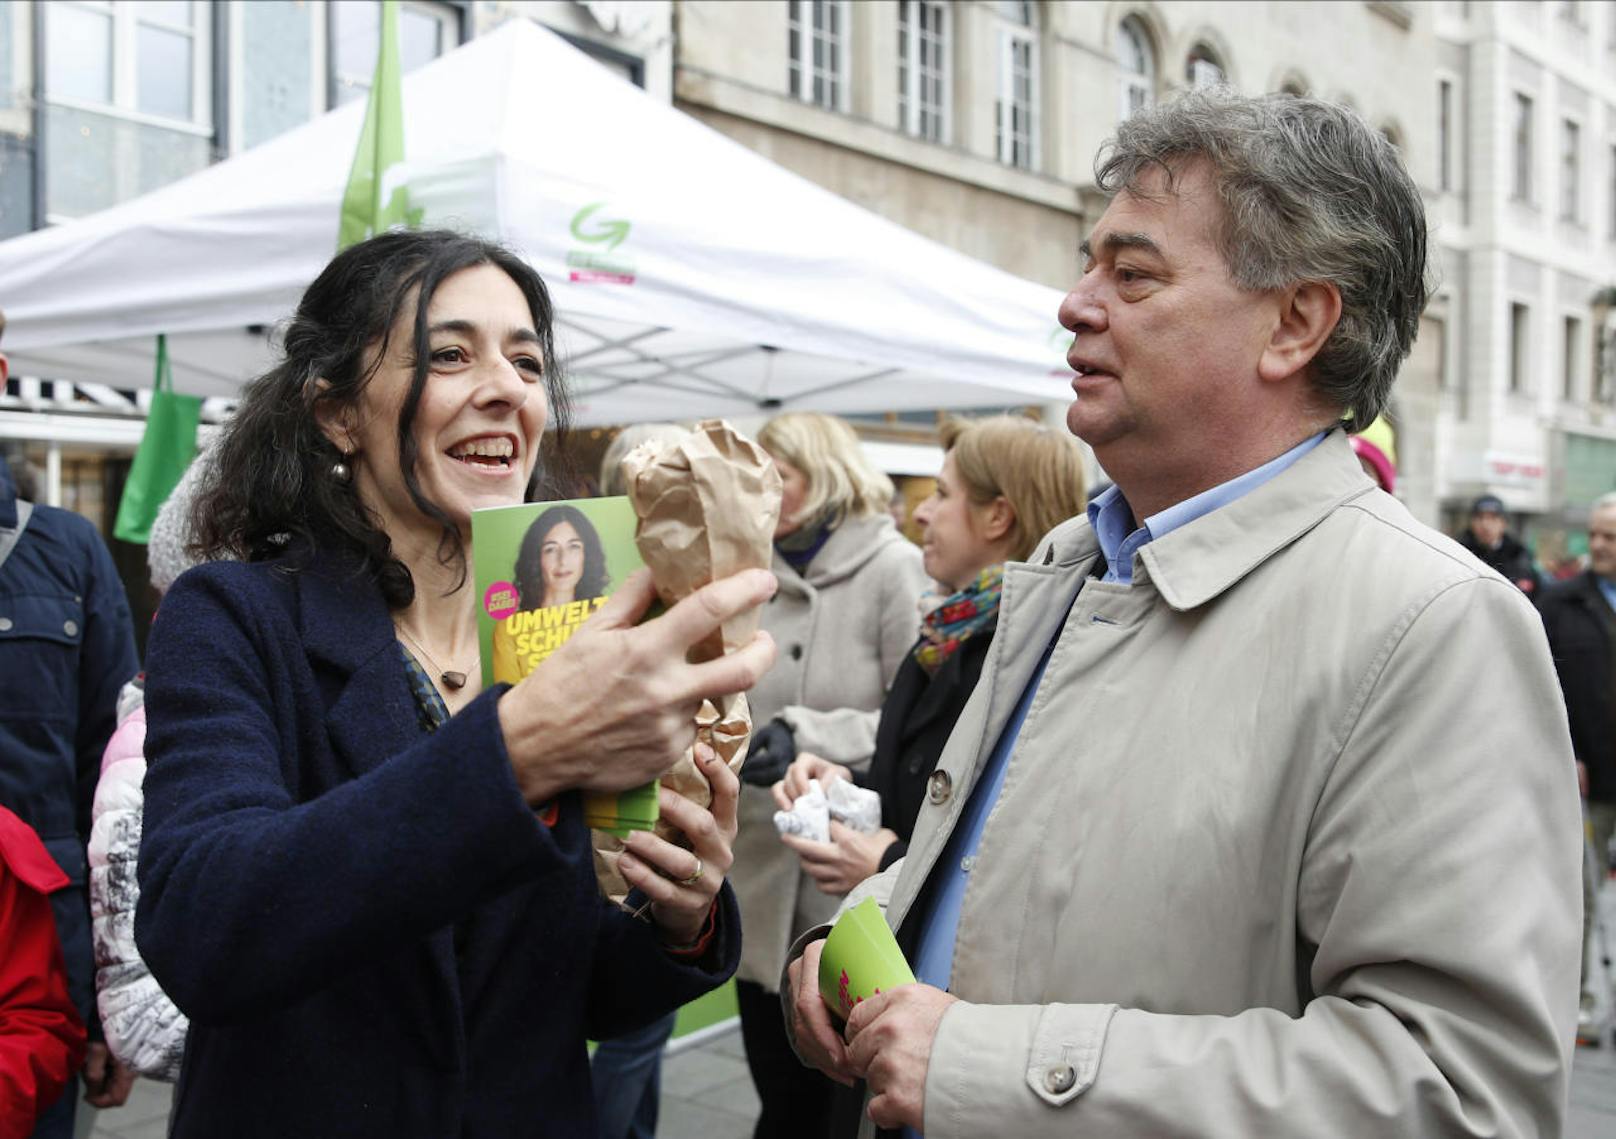 Die Grüne Spitzenkandidatin Sandra Krautwaschl (links) und der Grüne Bundesparteiobmann Werner Kogler während des "Wahlkampfabschluss" der Grünen Steiermark am Freitag, 22. November 2019, in Graz